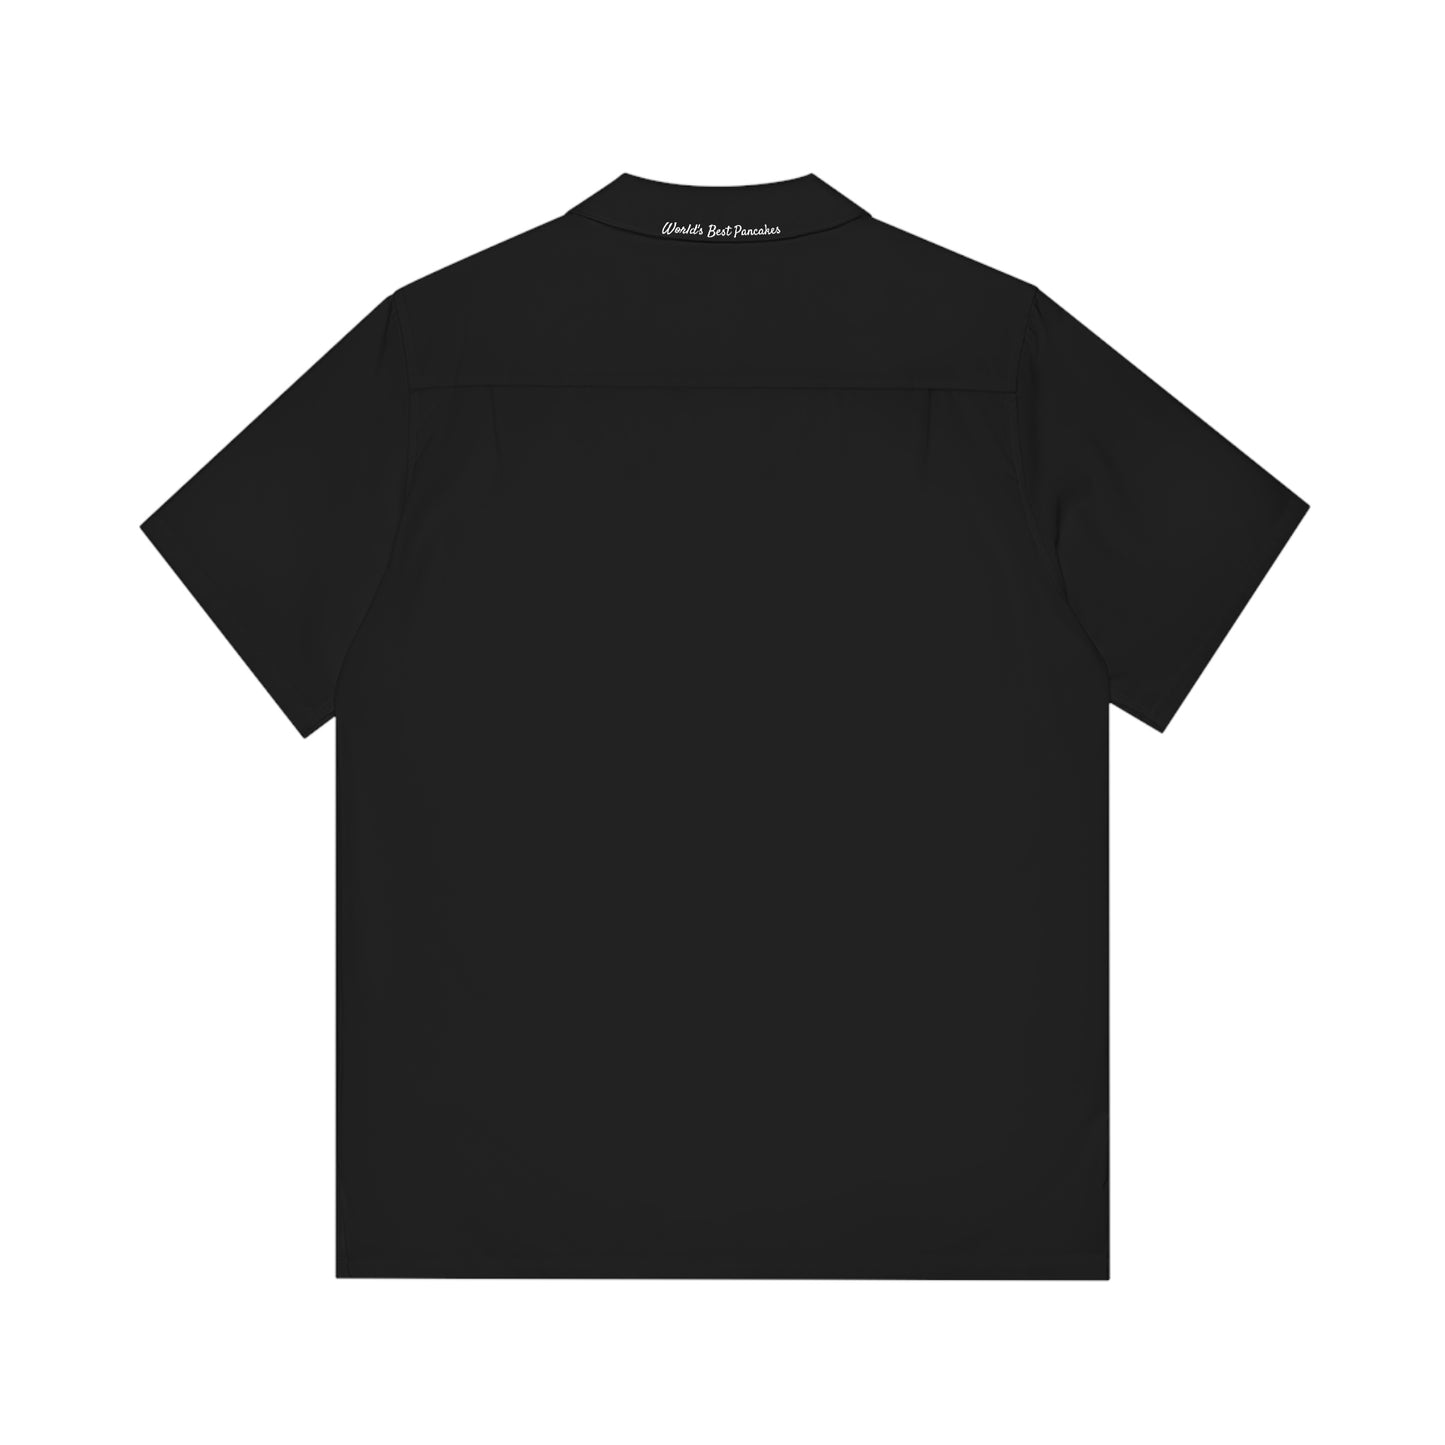 Broadway Diner Collared Logo Shirt (black)